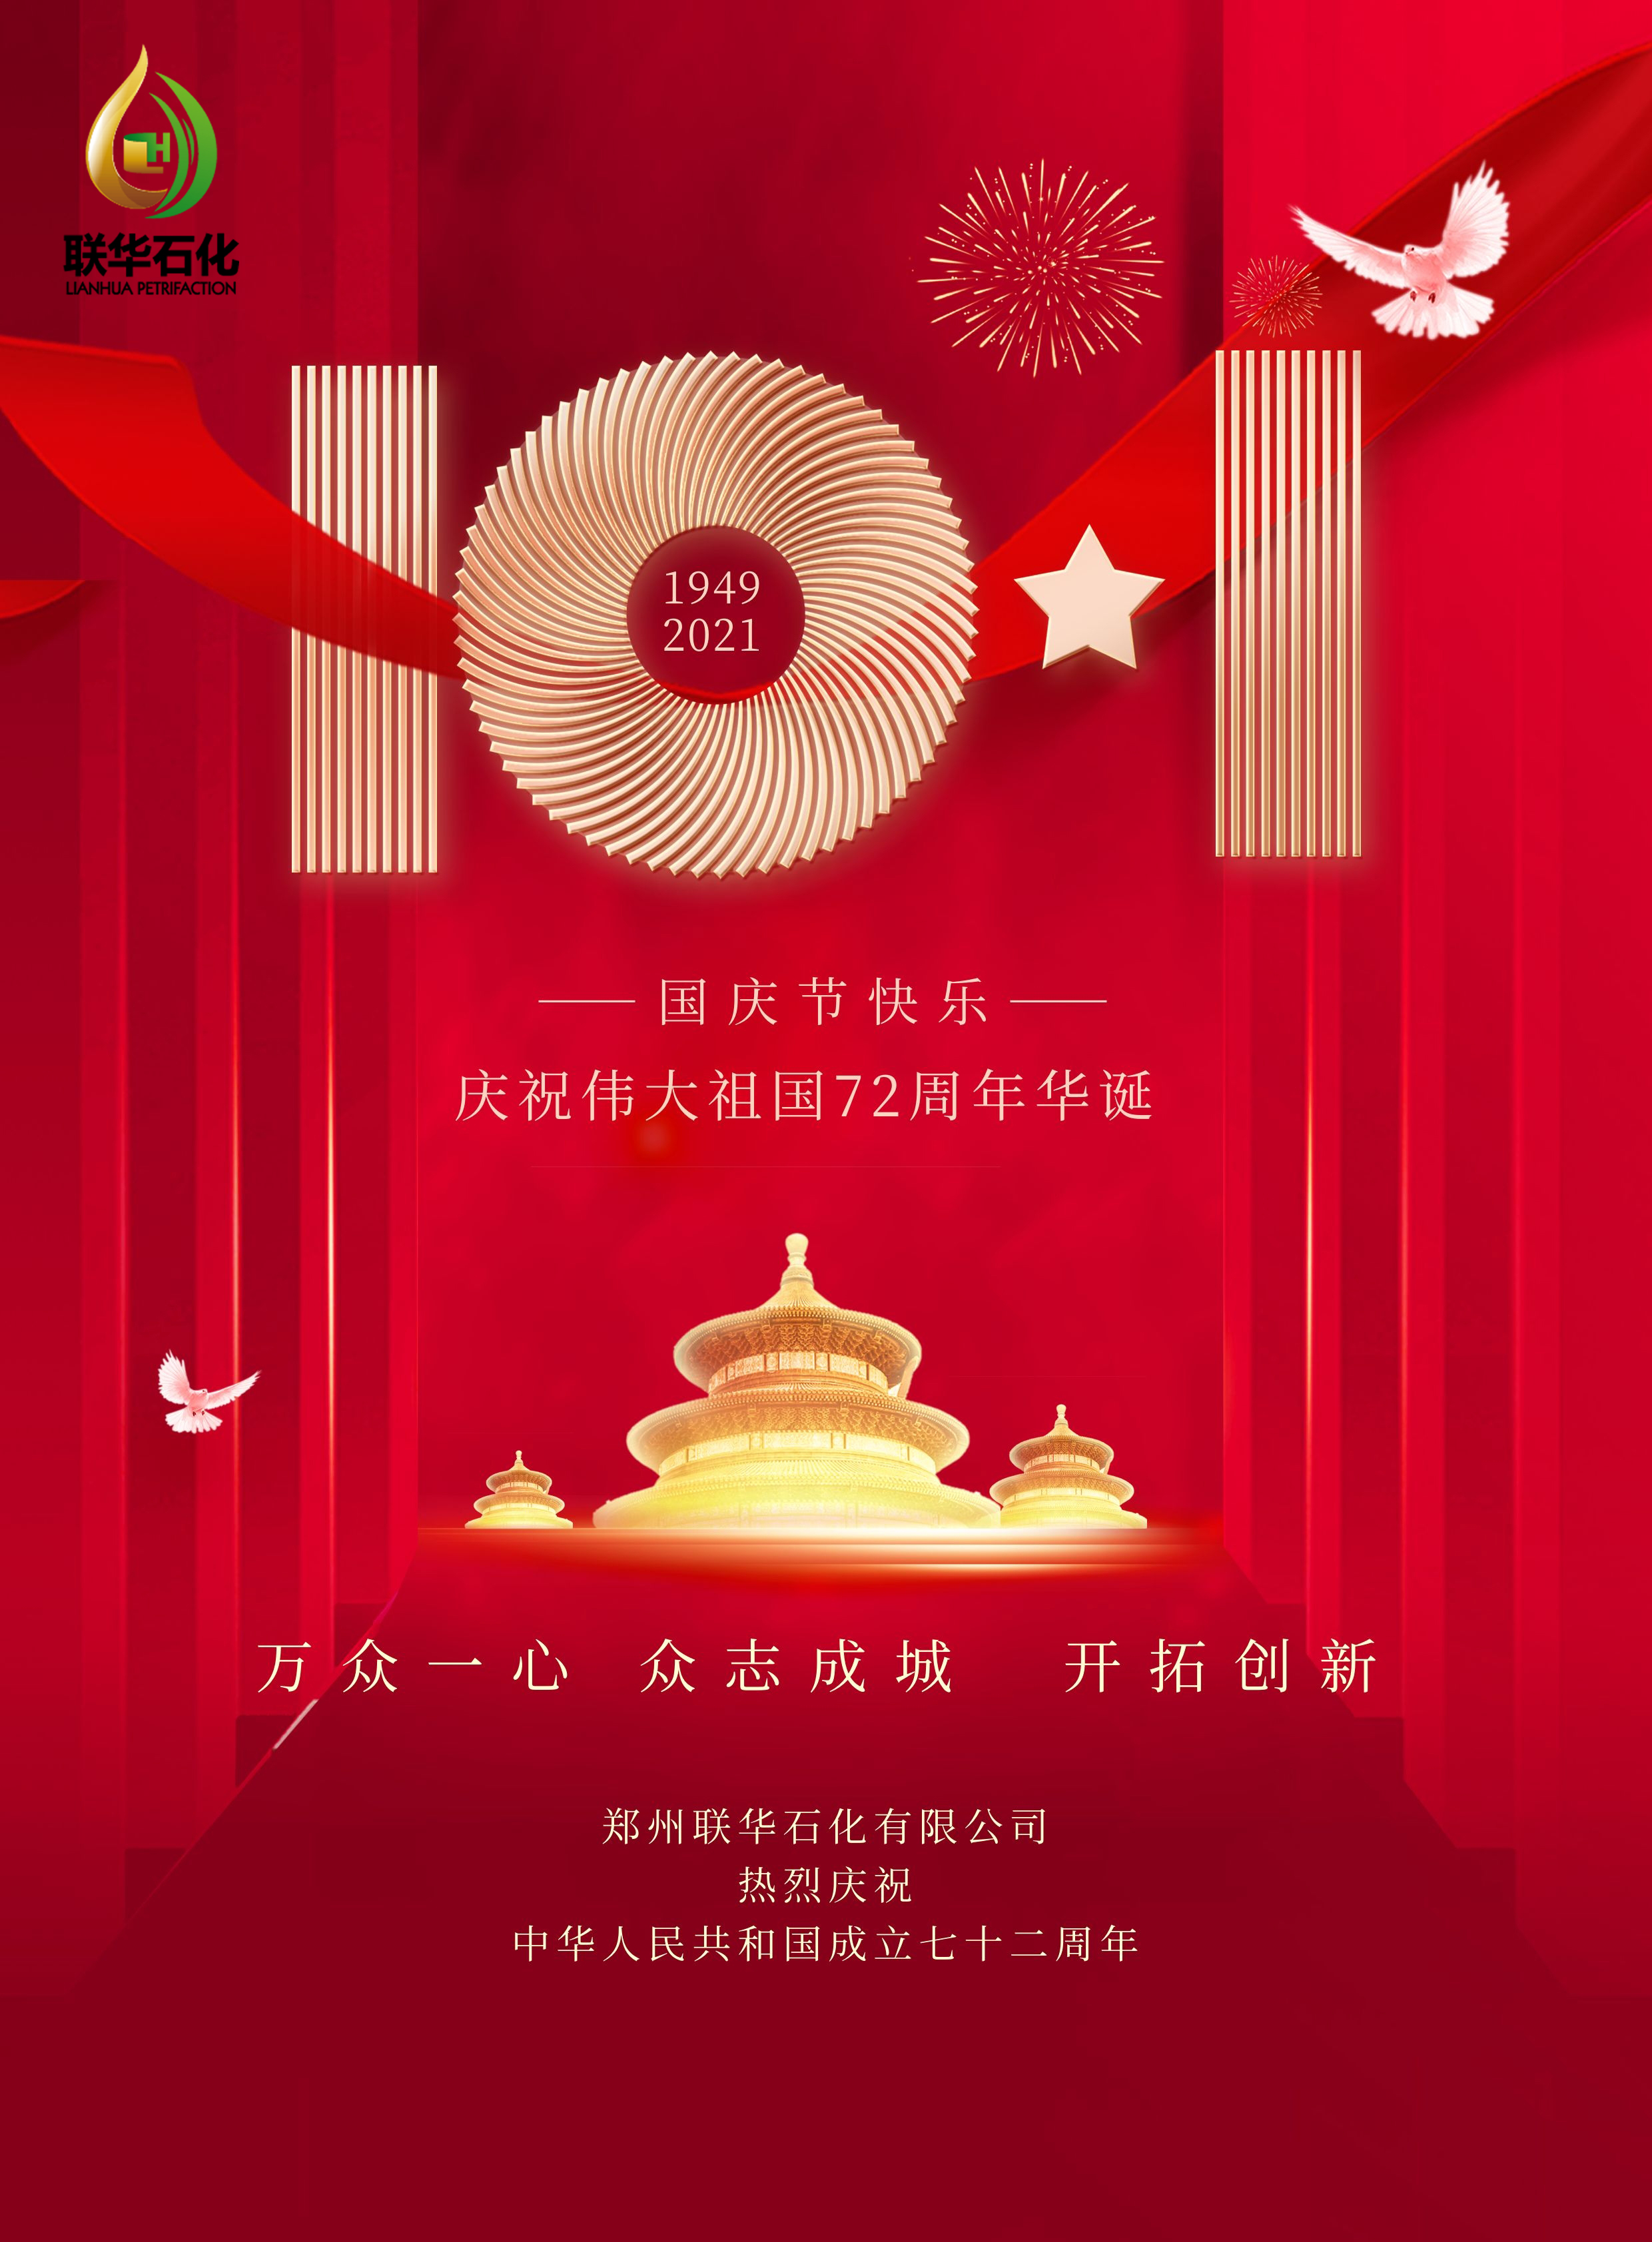 峥嵘岁月，砥砺前行 ---庆祝歌颂中华人民共和国成立72周年(图2)